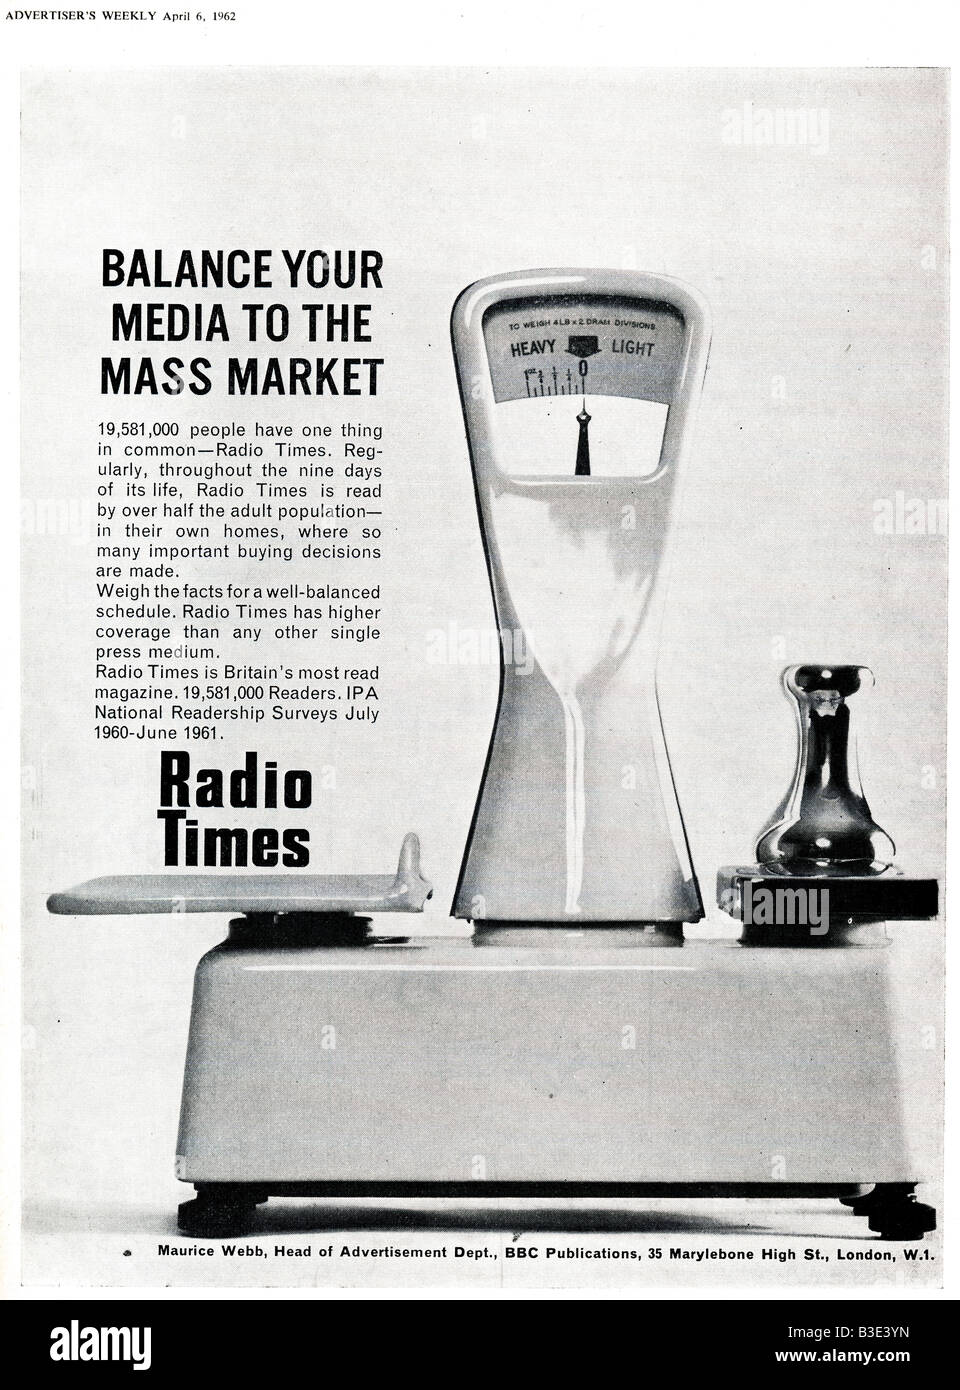 Anzeige für das BBC Radio Times Magazine vom Werbenden Weekly Journal Magazin 6. April 1962 nur zu redaktionellen Zwecken Stockfoto